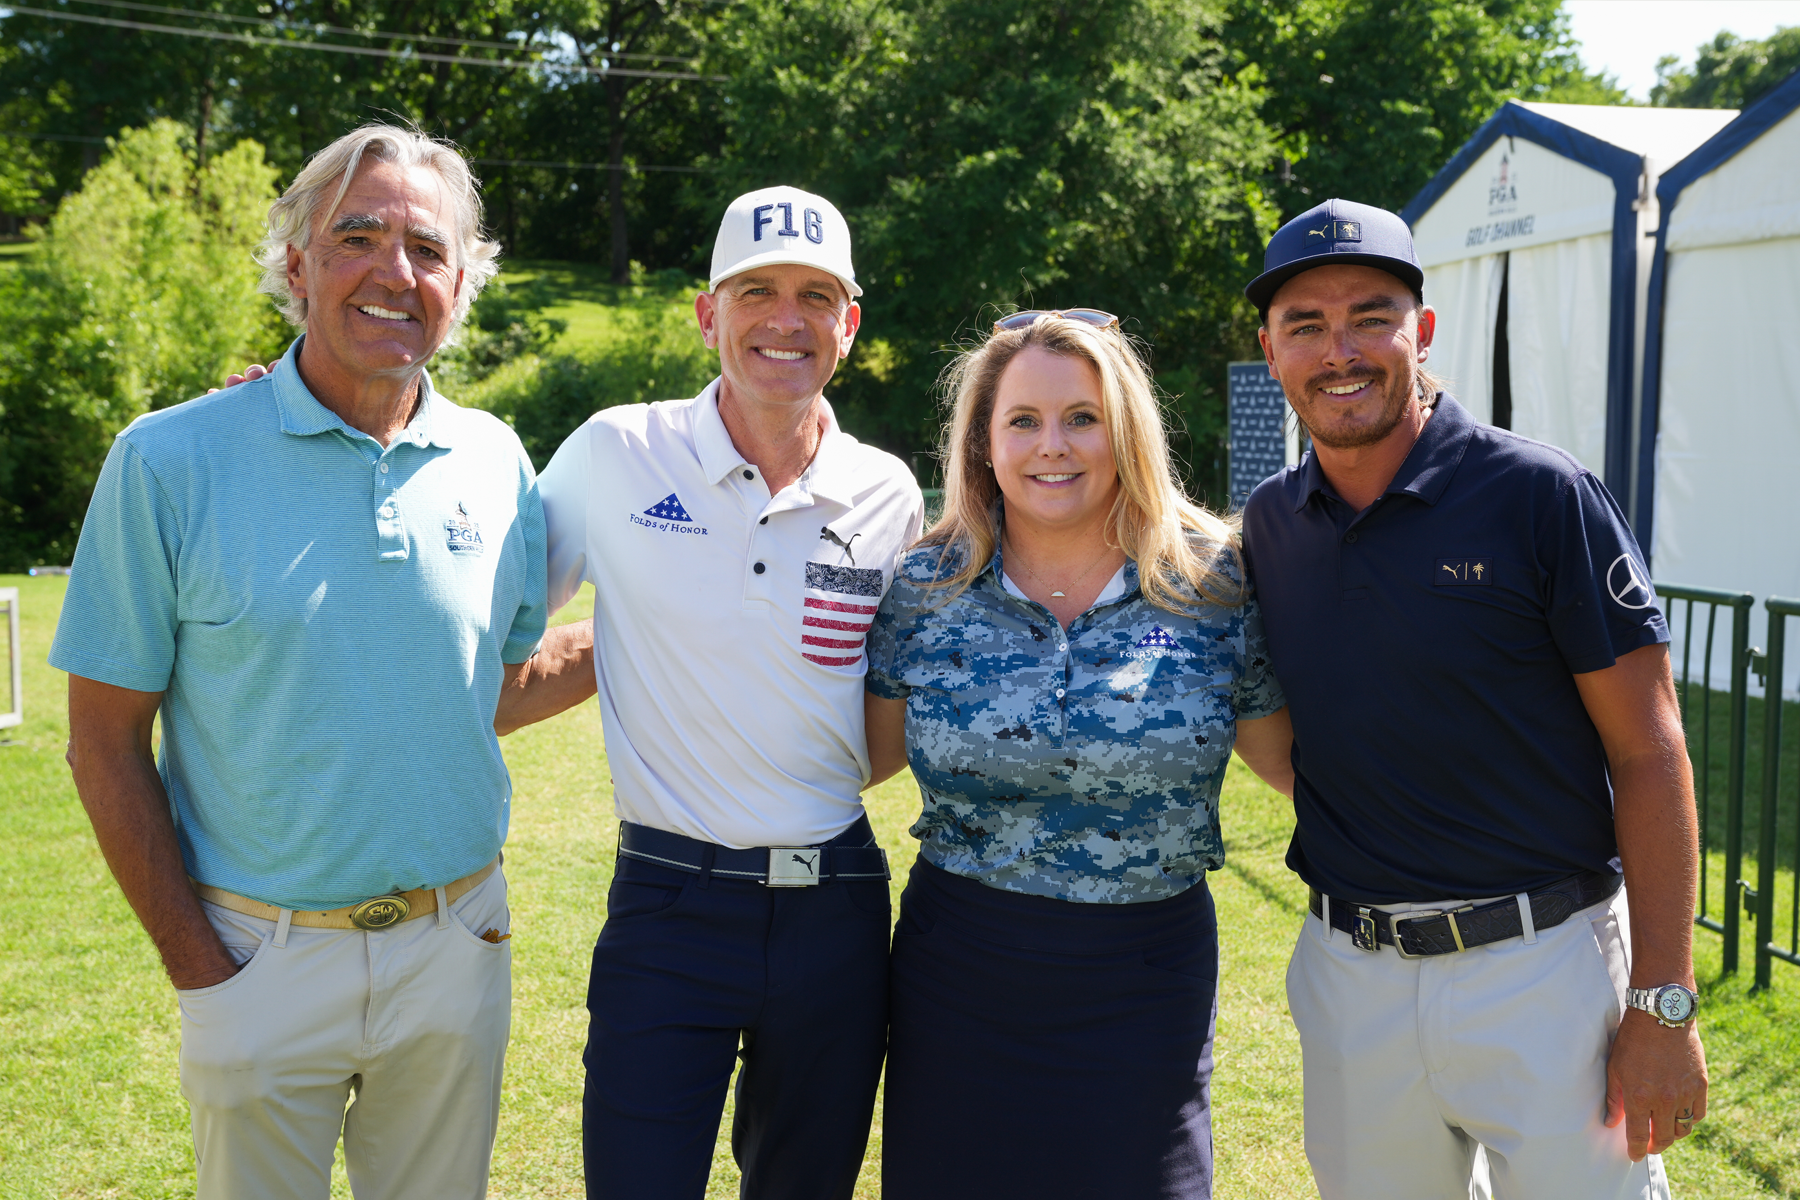 (L - R) PGA of America CEO, Seth Waugh, Lt. Colonel Dan Rooney, Jenn Stephens, Rickie Fowler